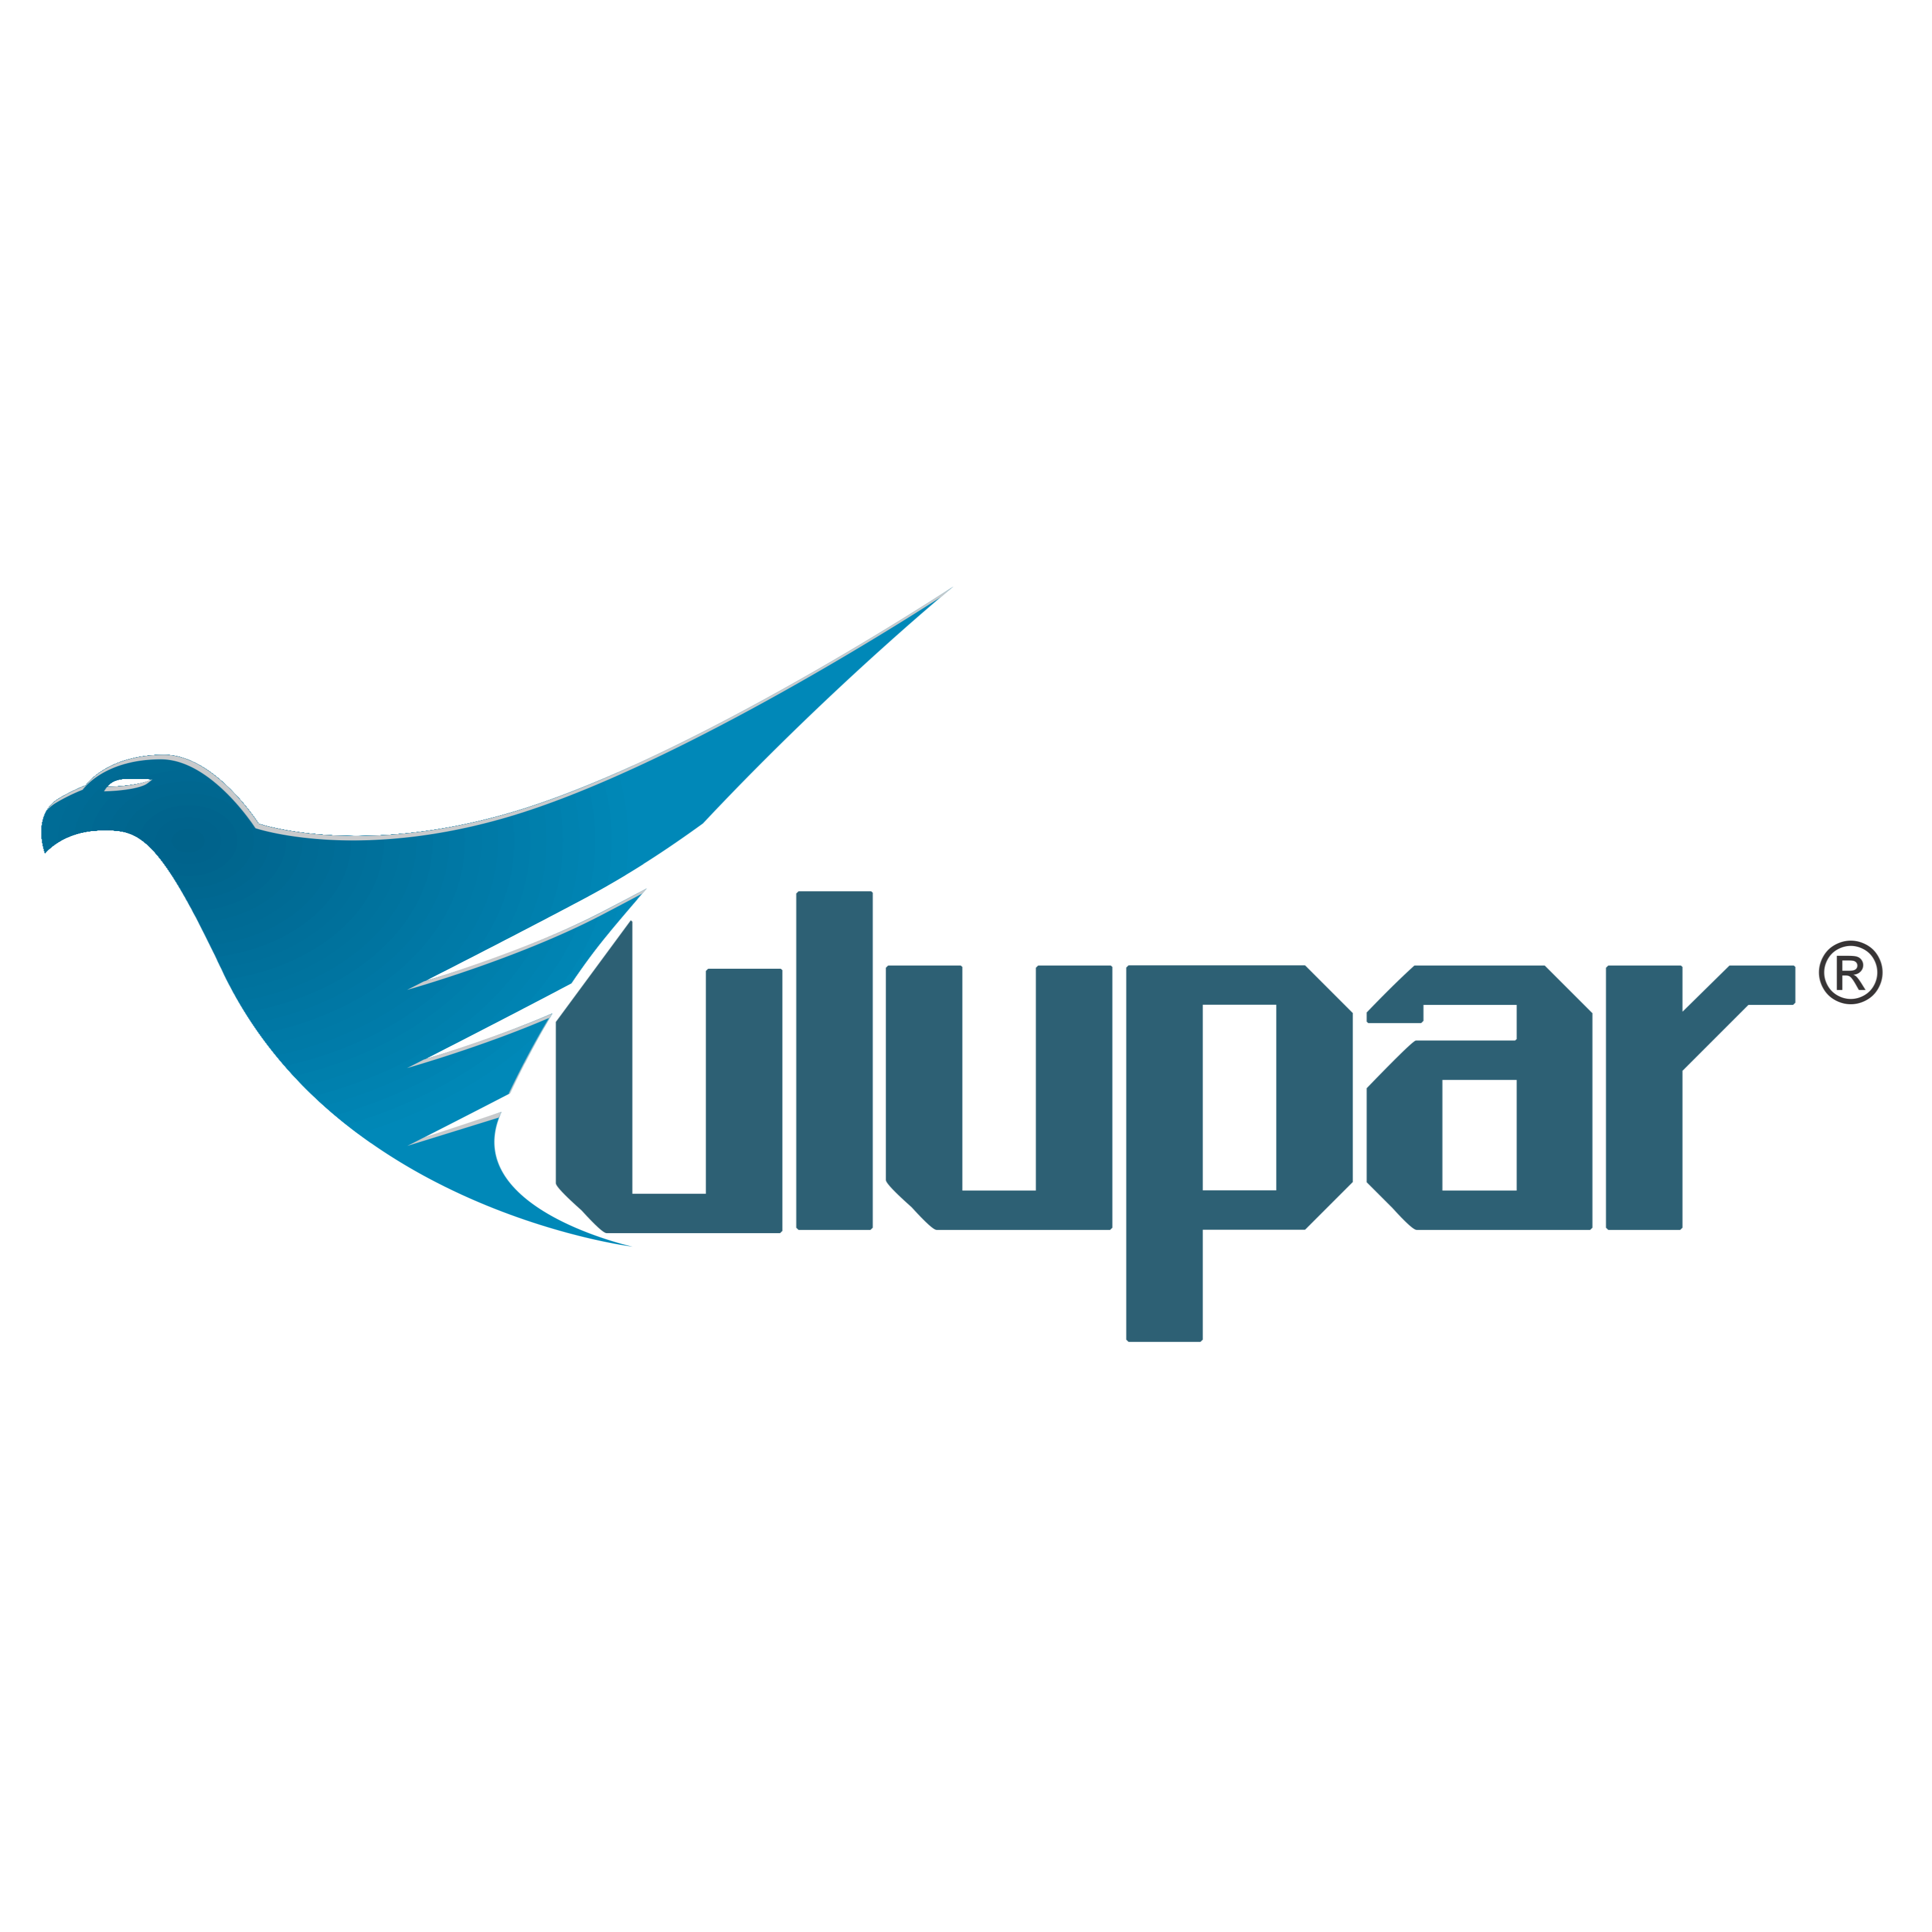 Pièces de rechange ULUPAR Automotive